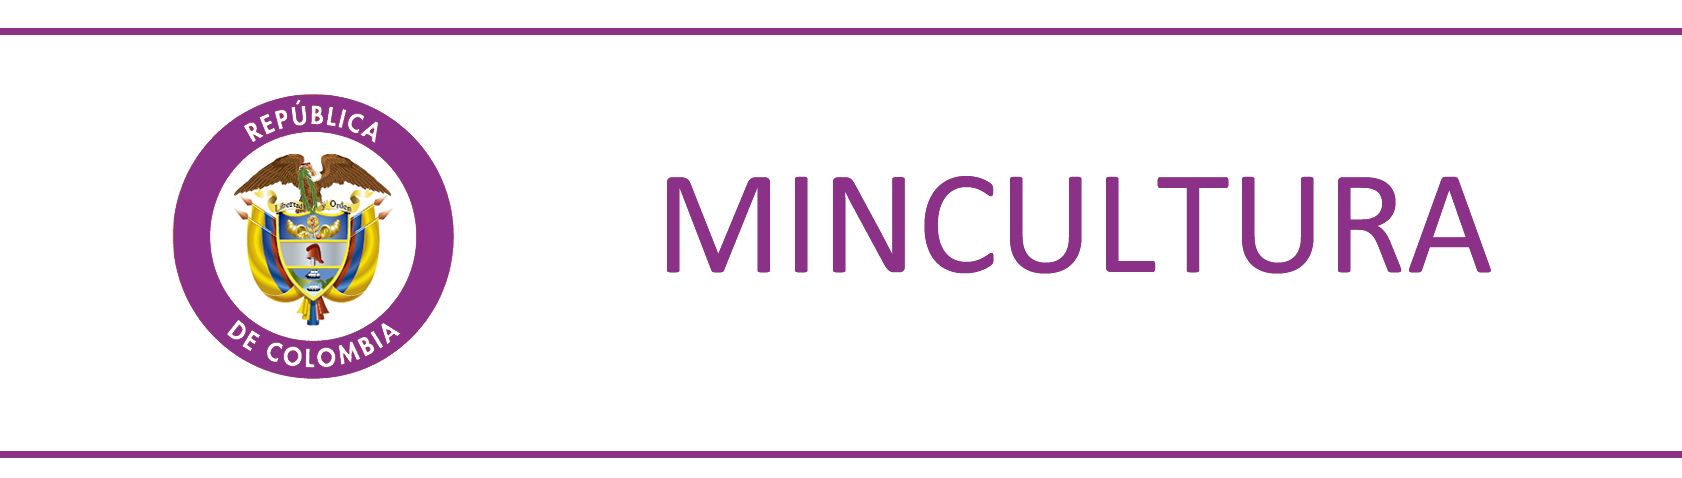 MinCultura Colombia logo